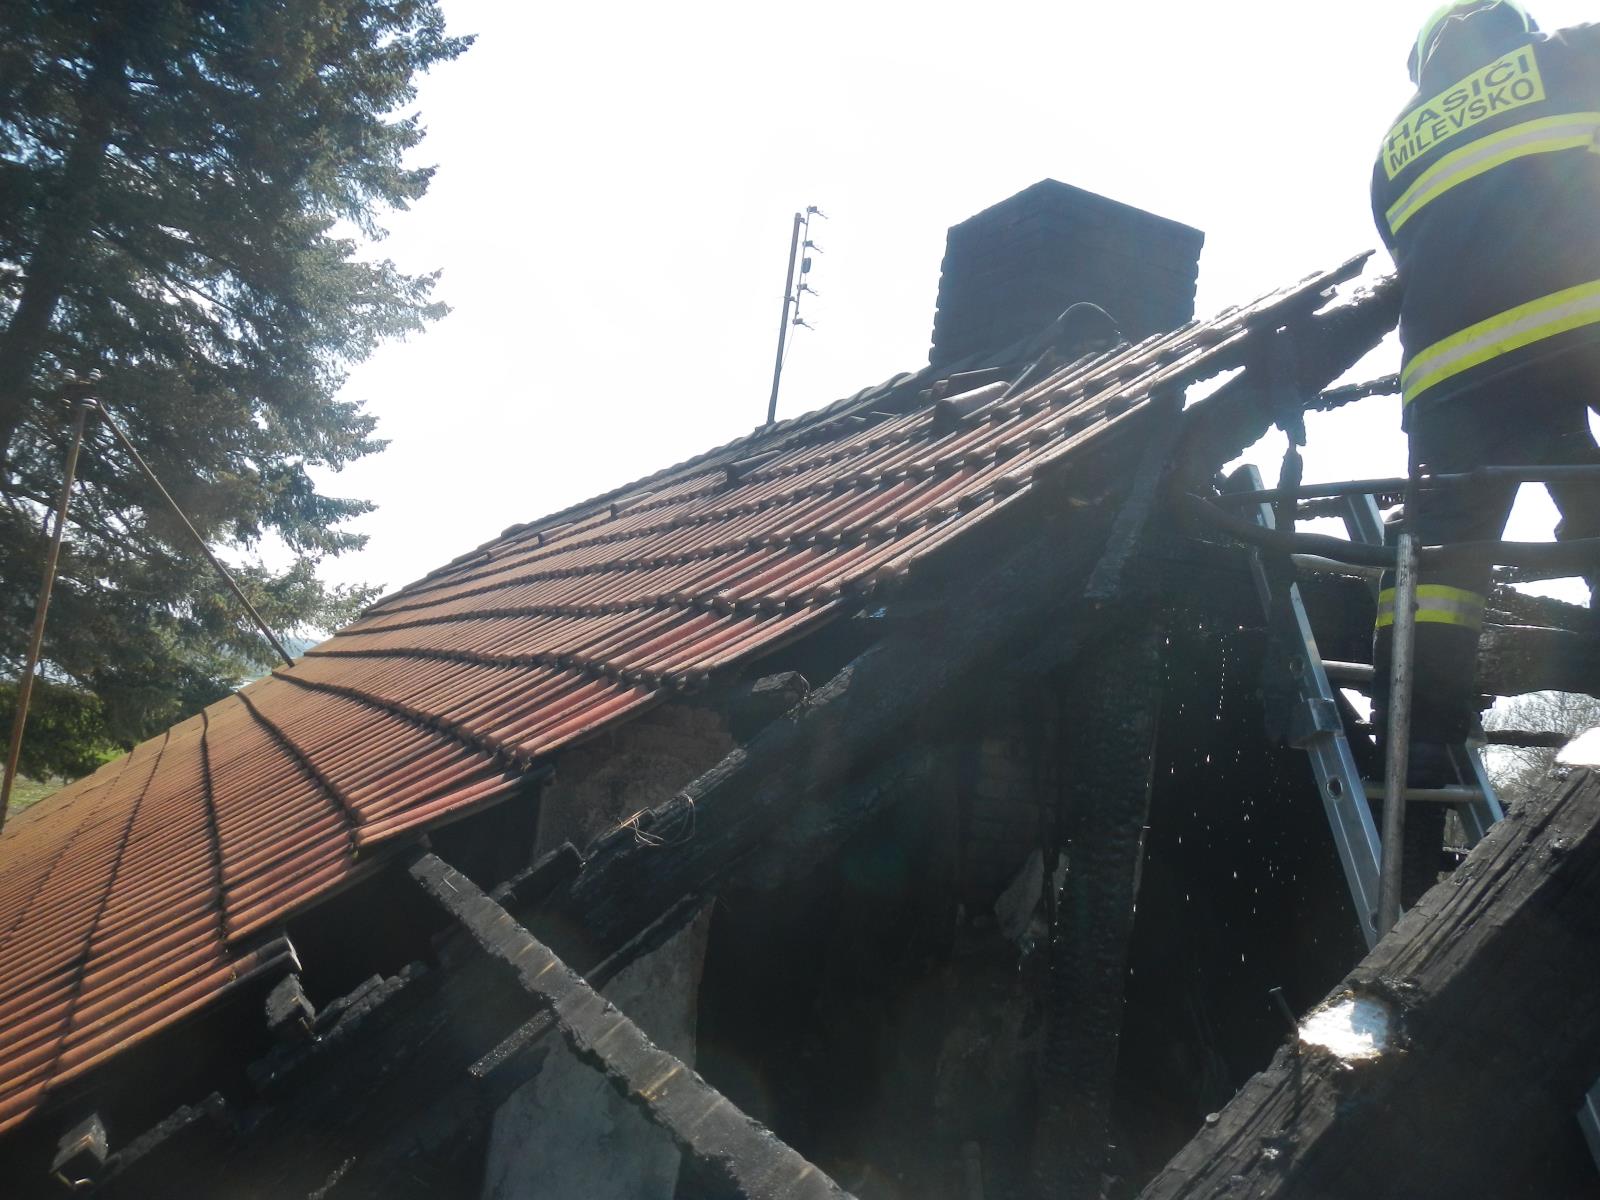 Požár střechy, Kostelec nad Vltavou - 18. 4. 2019 (3).JPG